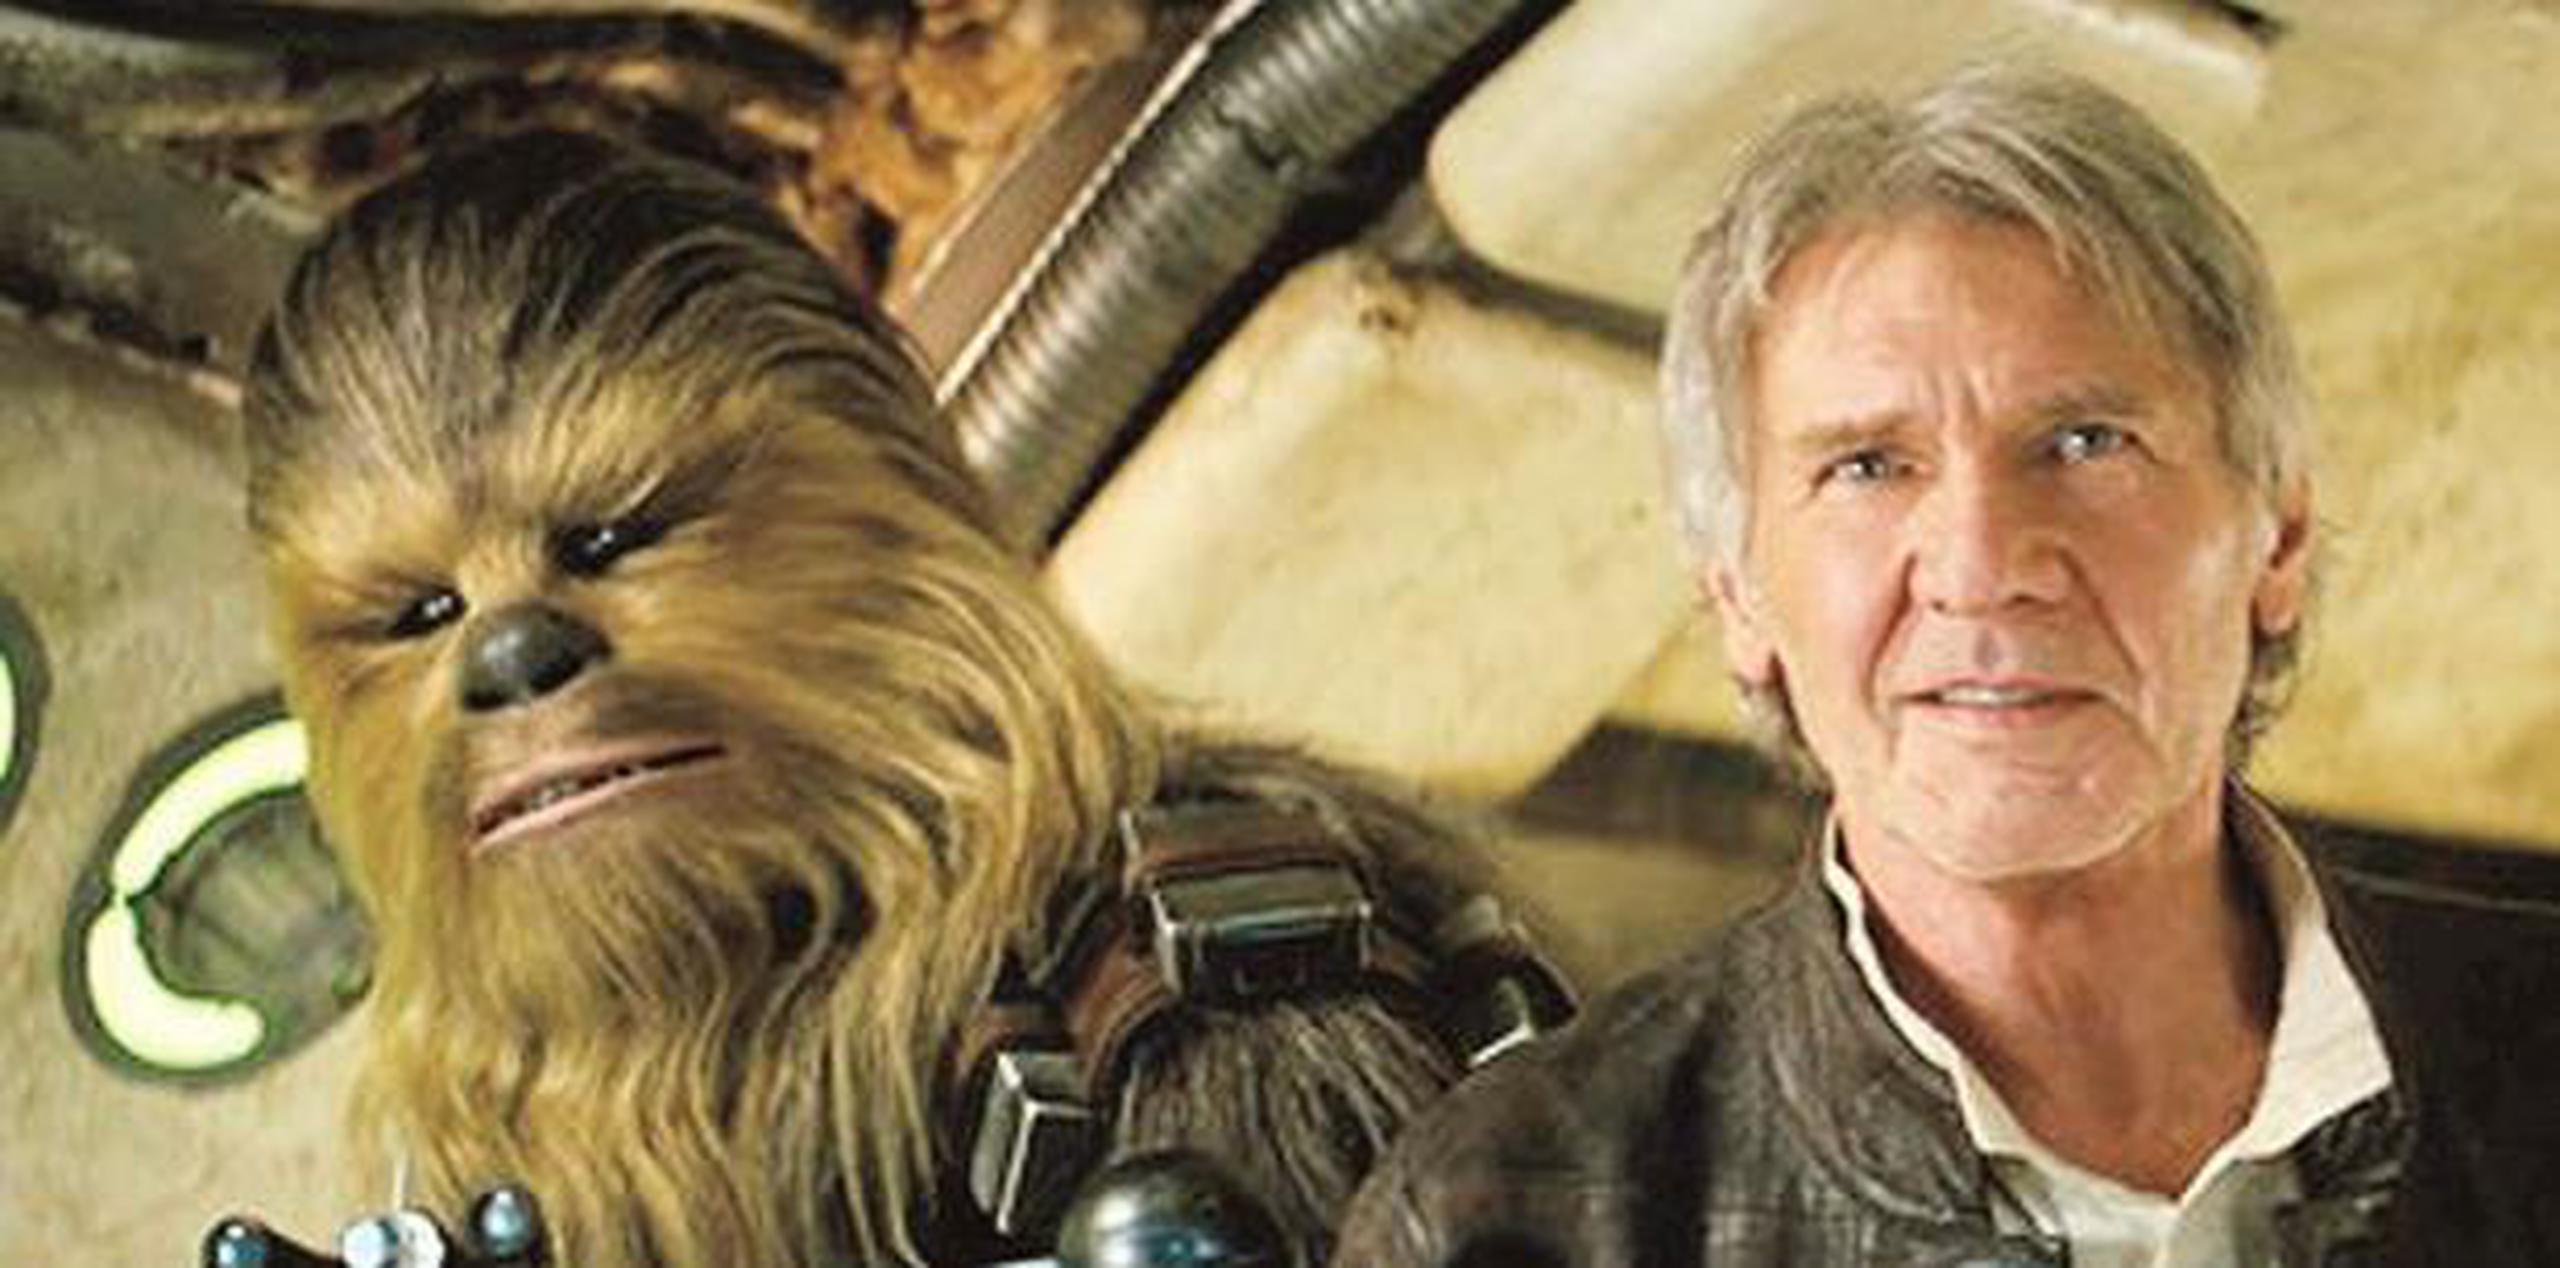 El actor volvió a interpretar a Chewbacca en "Star Wars: Episode III - Revenge of the Sith" (2005), que cerró la segunda trilogía de la saga; y "Star Wars: Episode VII - The Force Awakens" (2015), que inició la tercera, (Archivo)